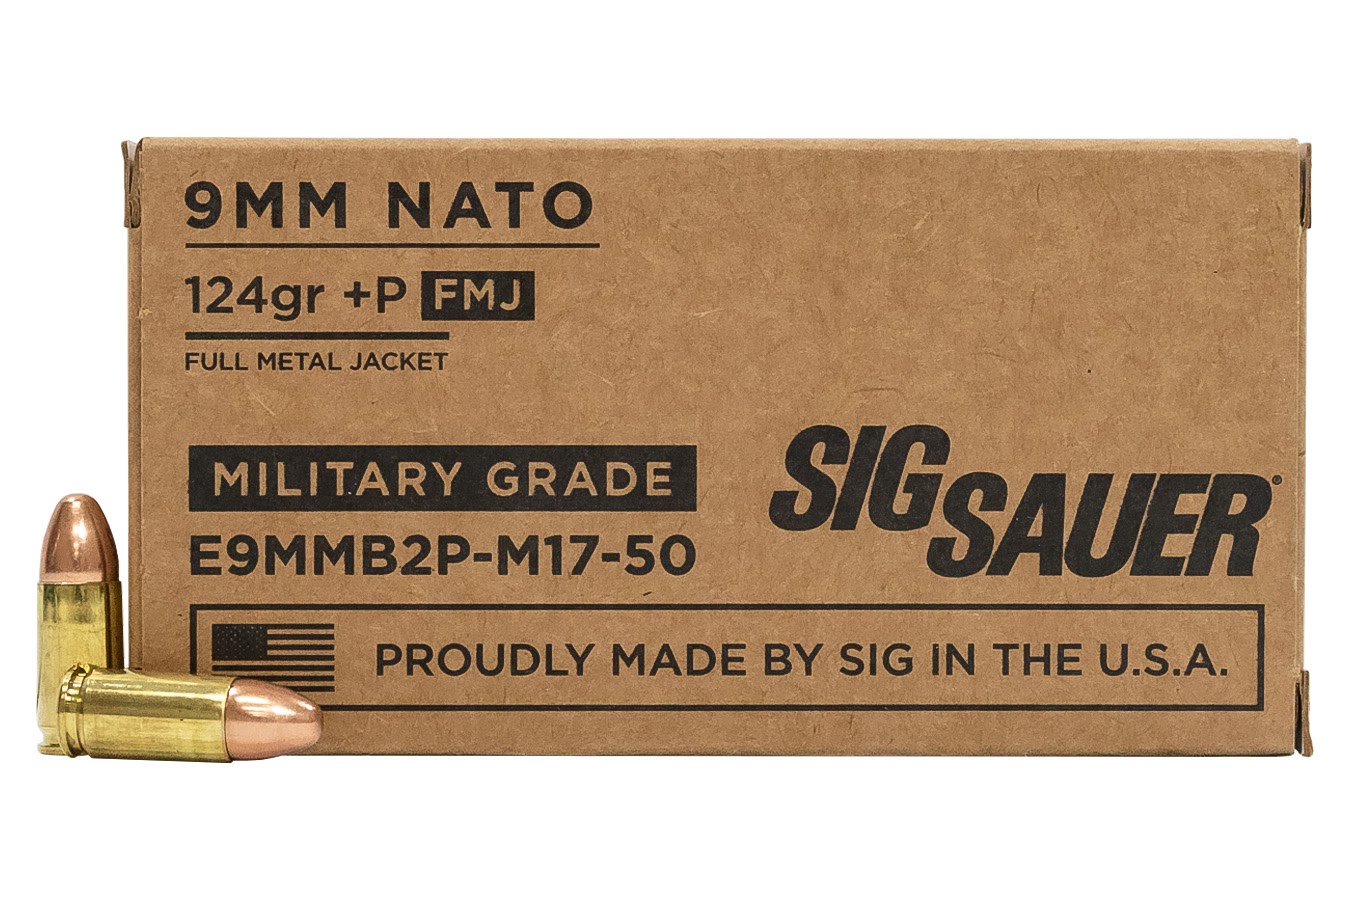 9mm NATO